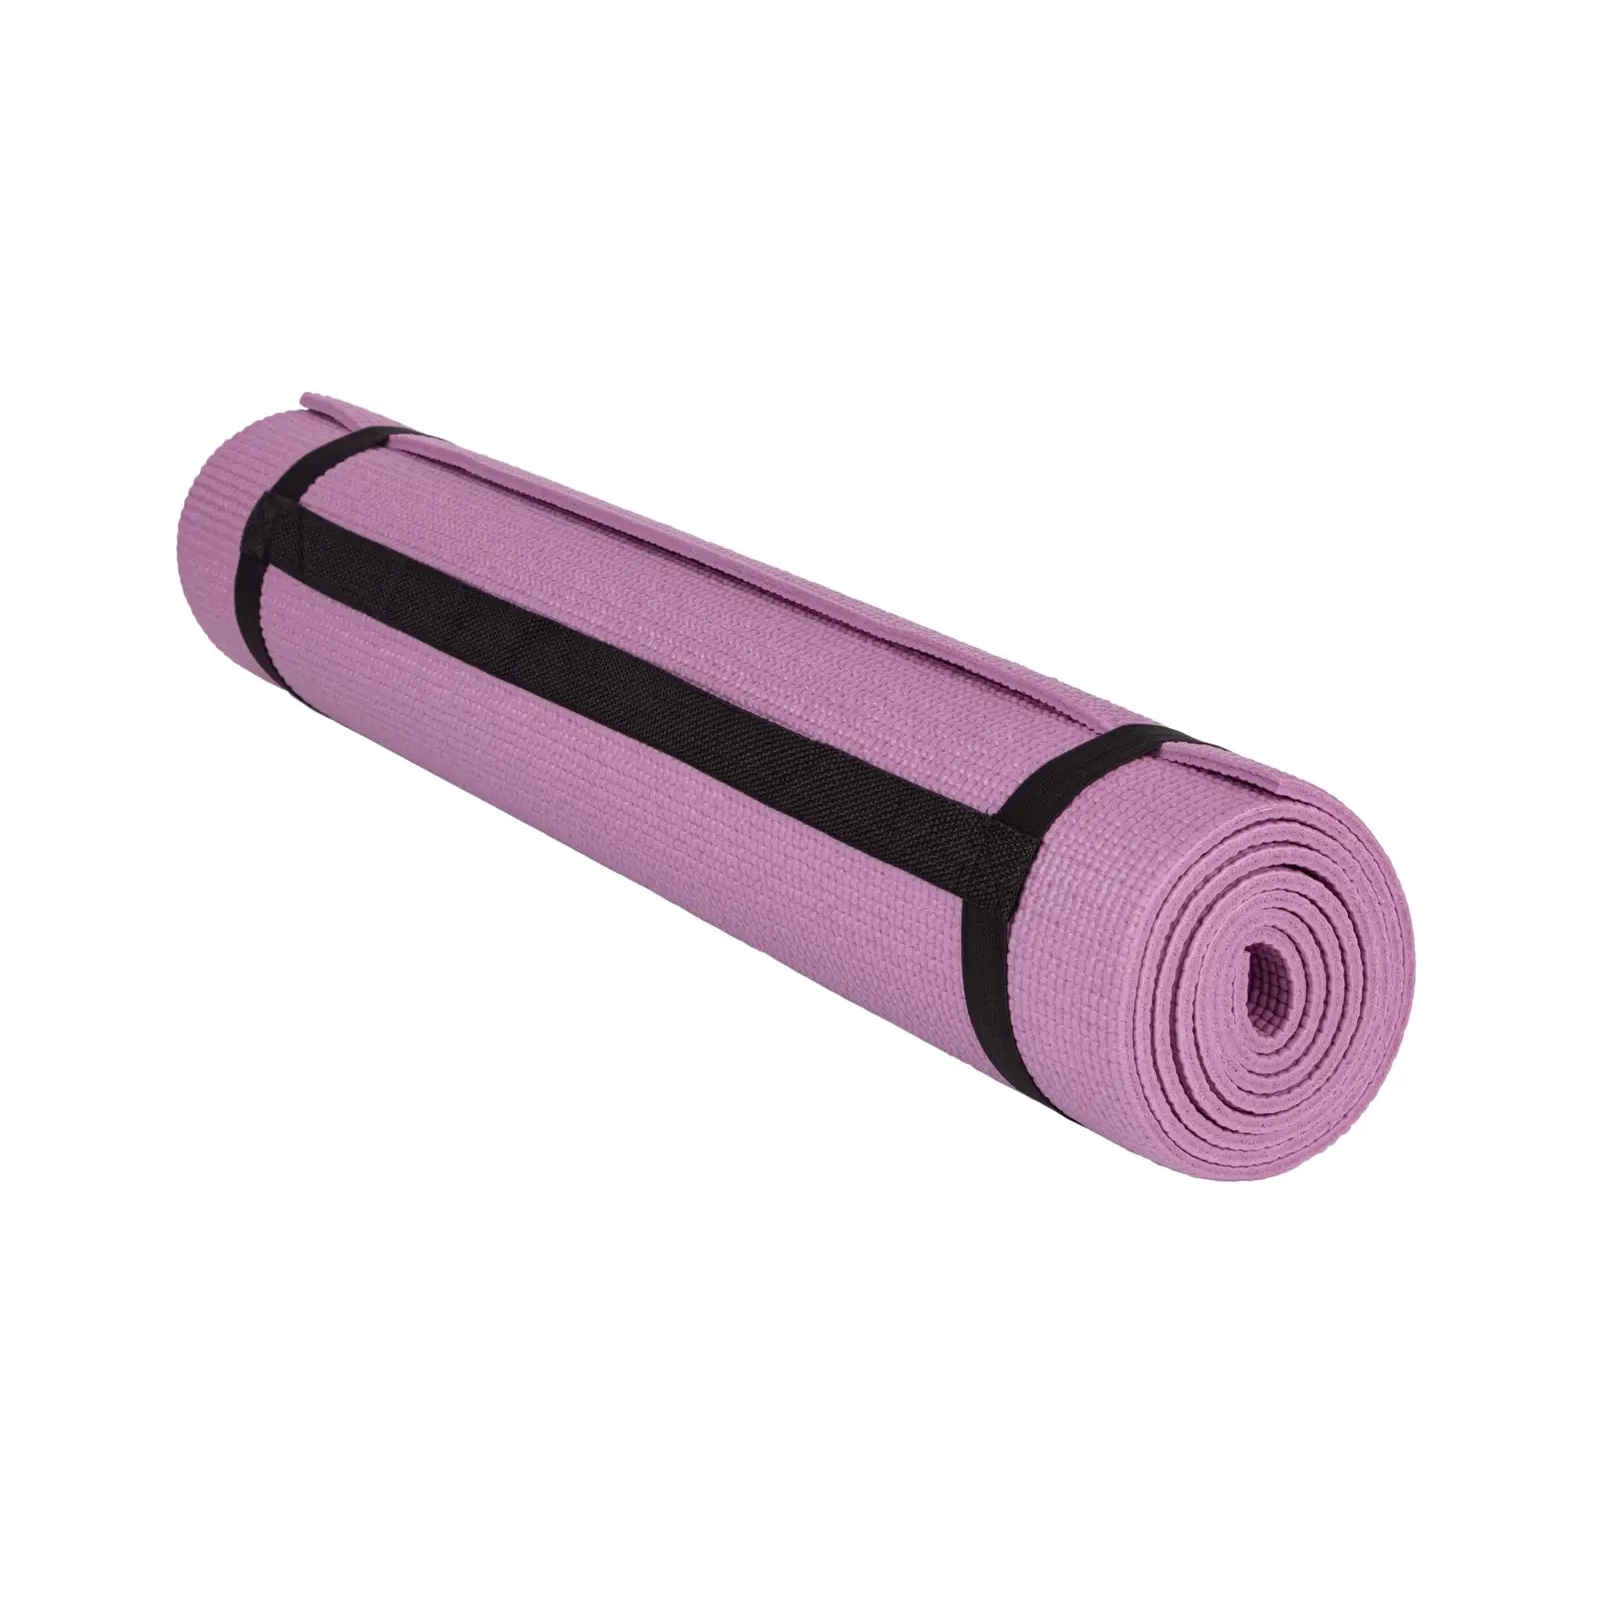 Коврик для йоги PowerPlay 4010 PVC Yoga Mat 173 x 61 x 0.6 см Лавандовий (PP_4010_Lavender_(173*0,6)) изображение 3